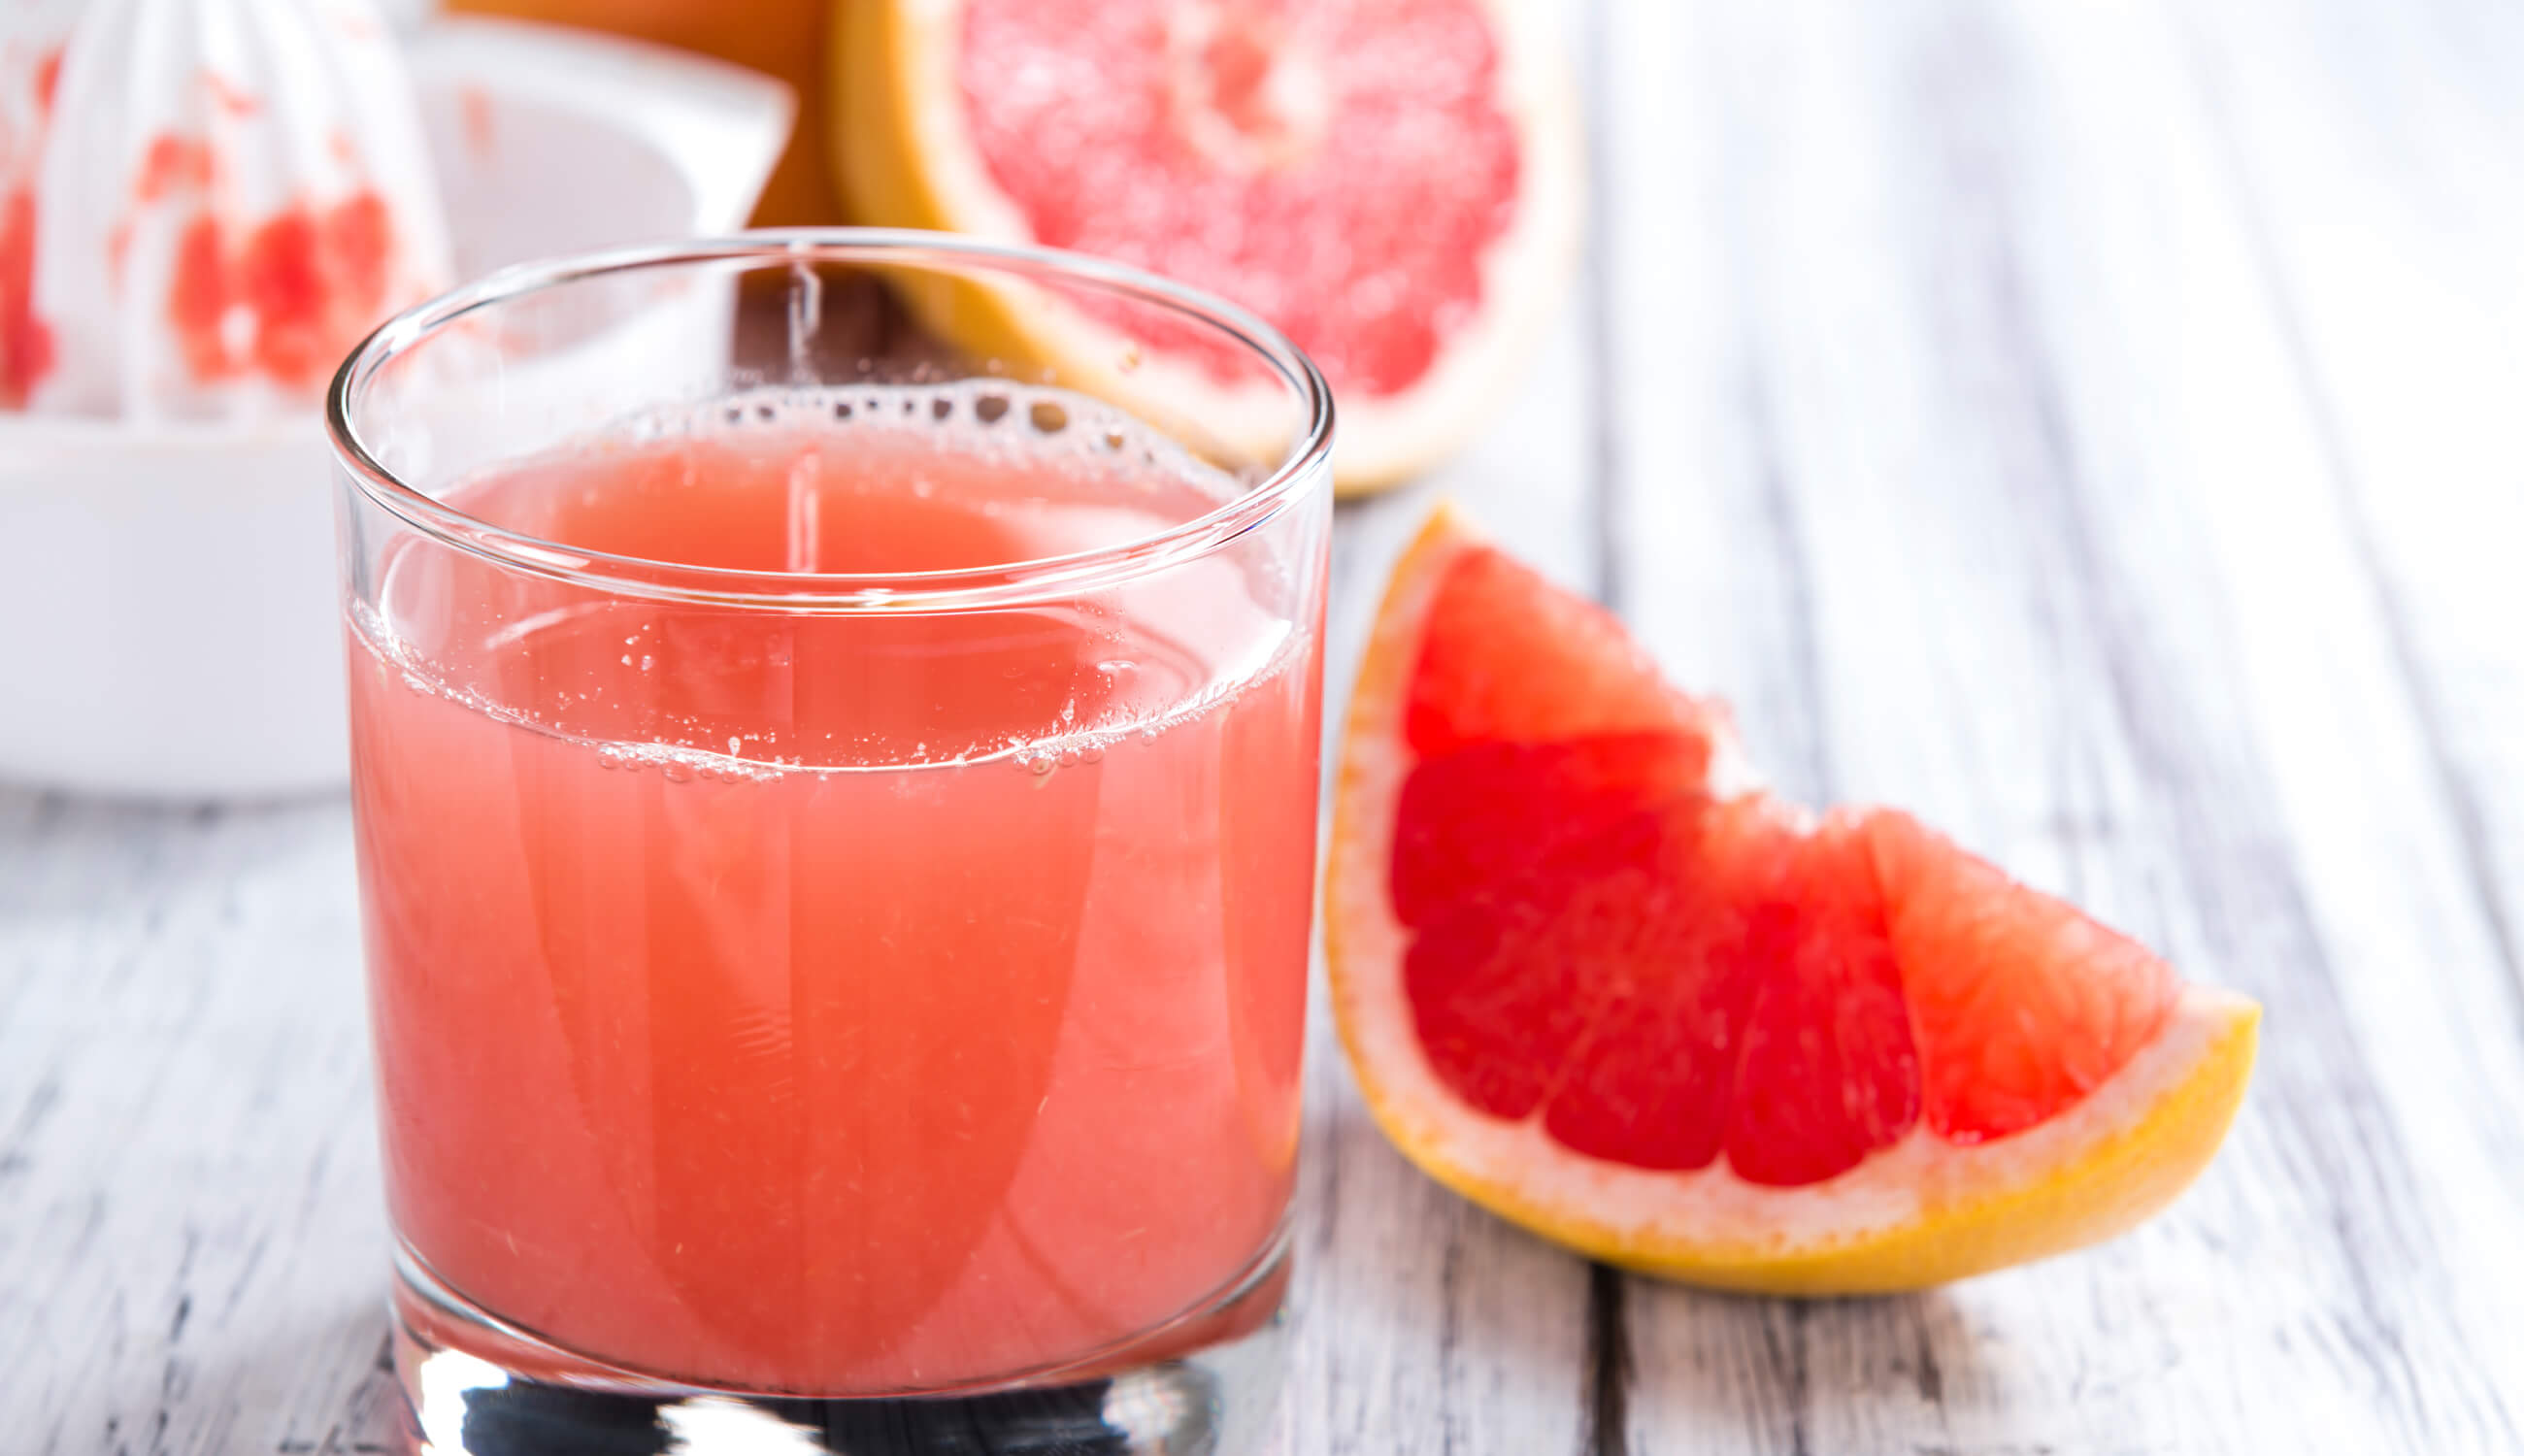 Grape fruit juice